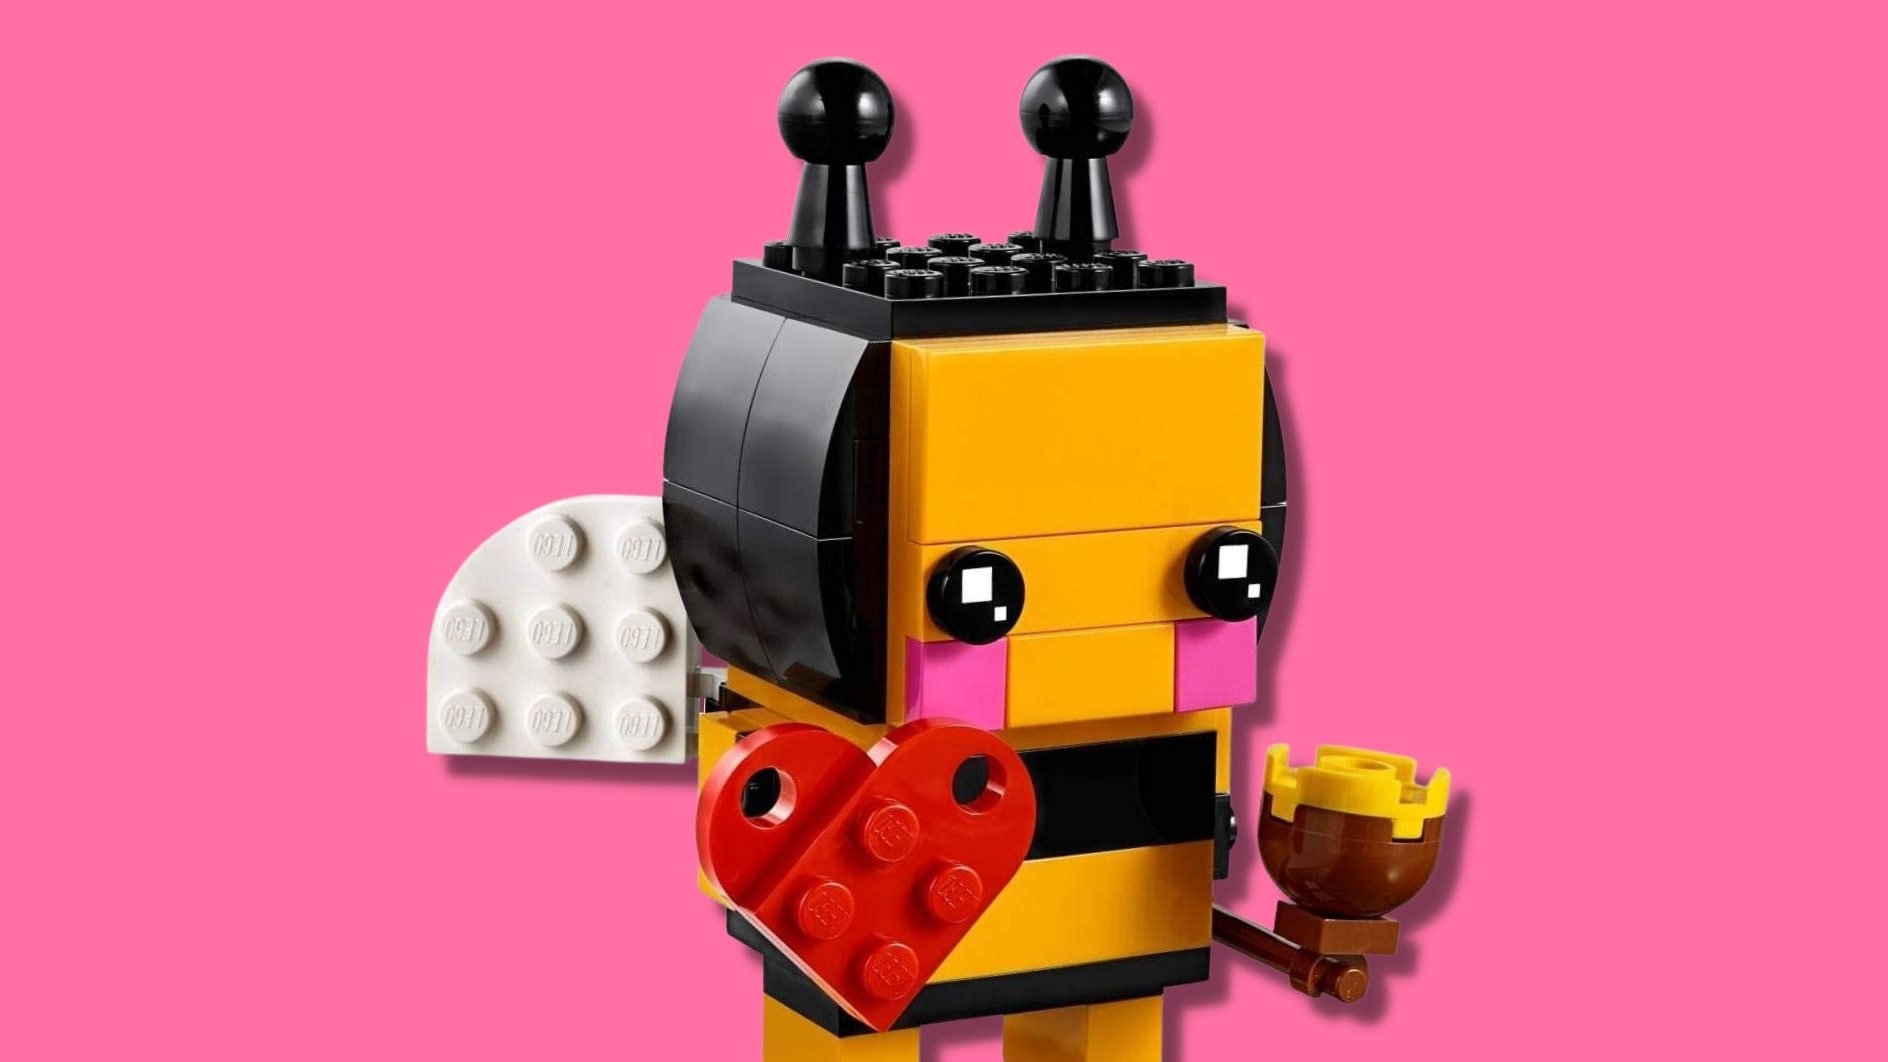 Lego per San Valentino: tutti i set per conquistare la tua dolce metà